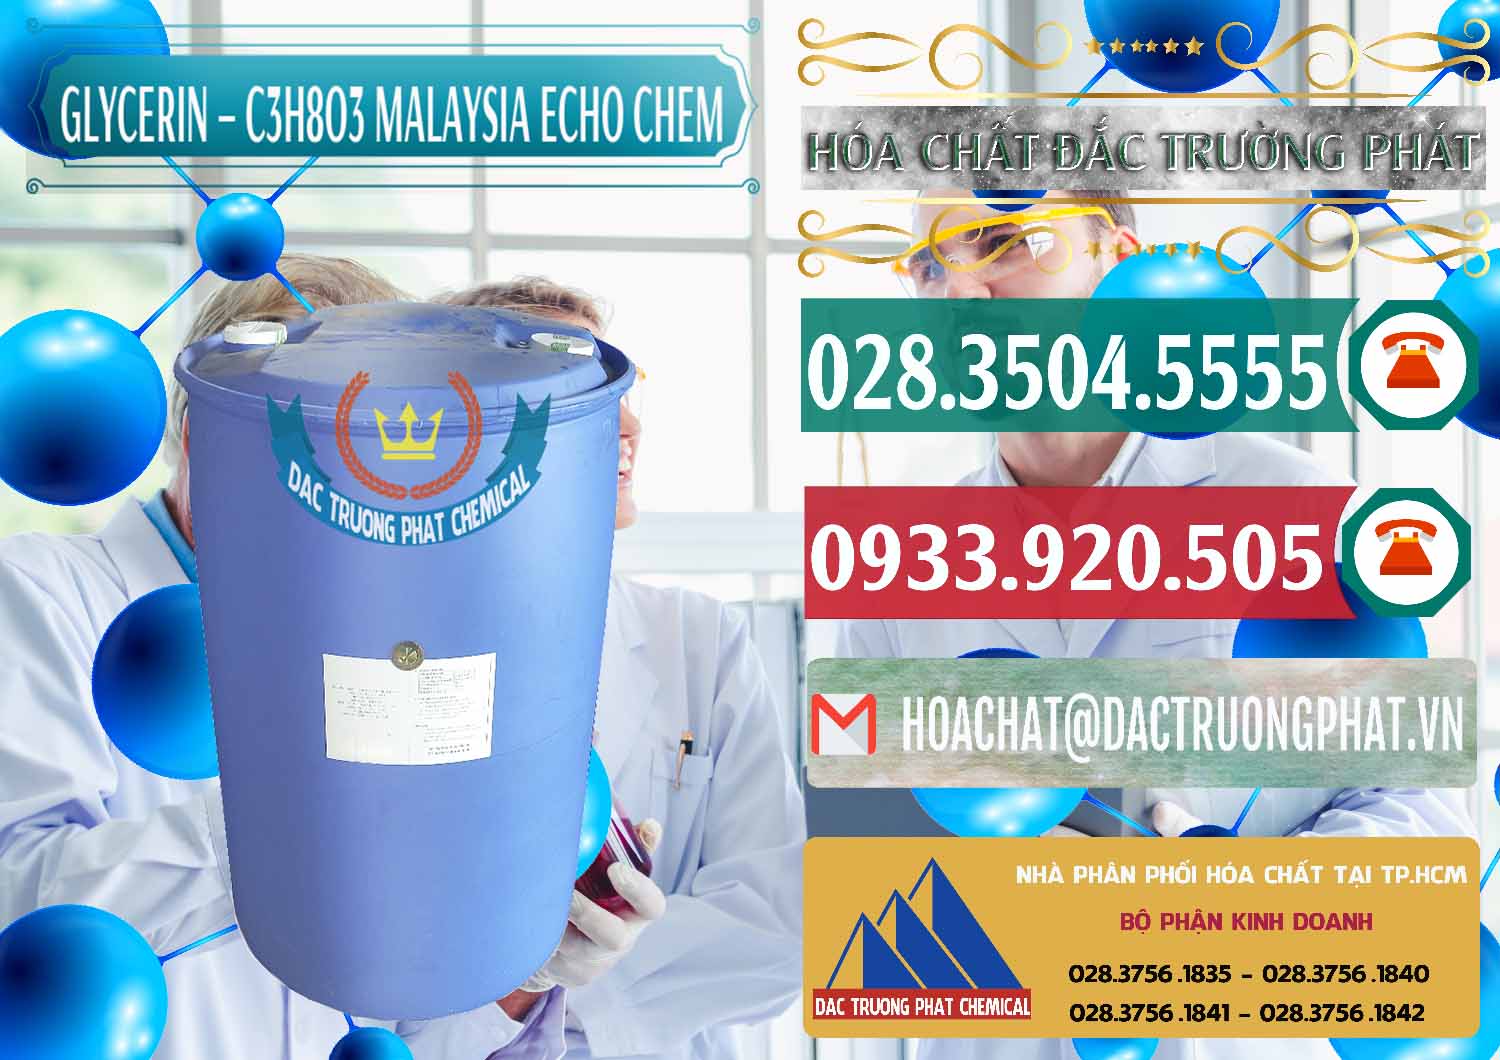 Cty chuyên phân phối & bán C3H8O3 - Glycerin 99.7% Echo Chem Malaysia - 0273 - Đơn vị bán _ cung cấp hóa chất tại TP.HCM - muabanhoachat.vn